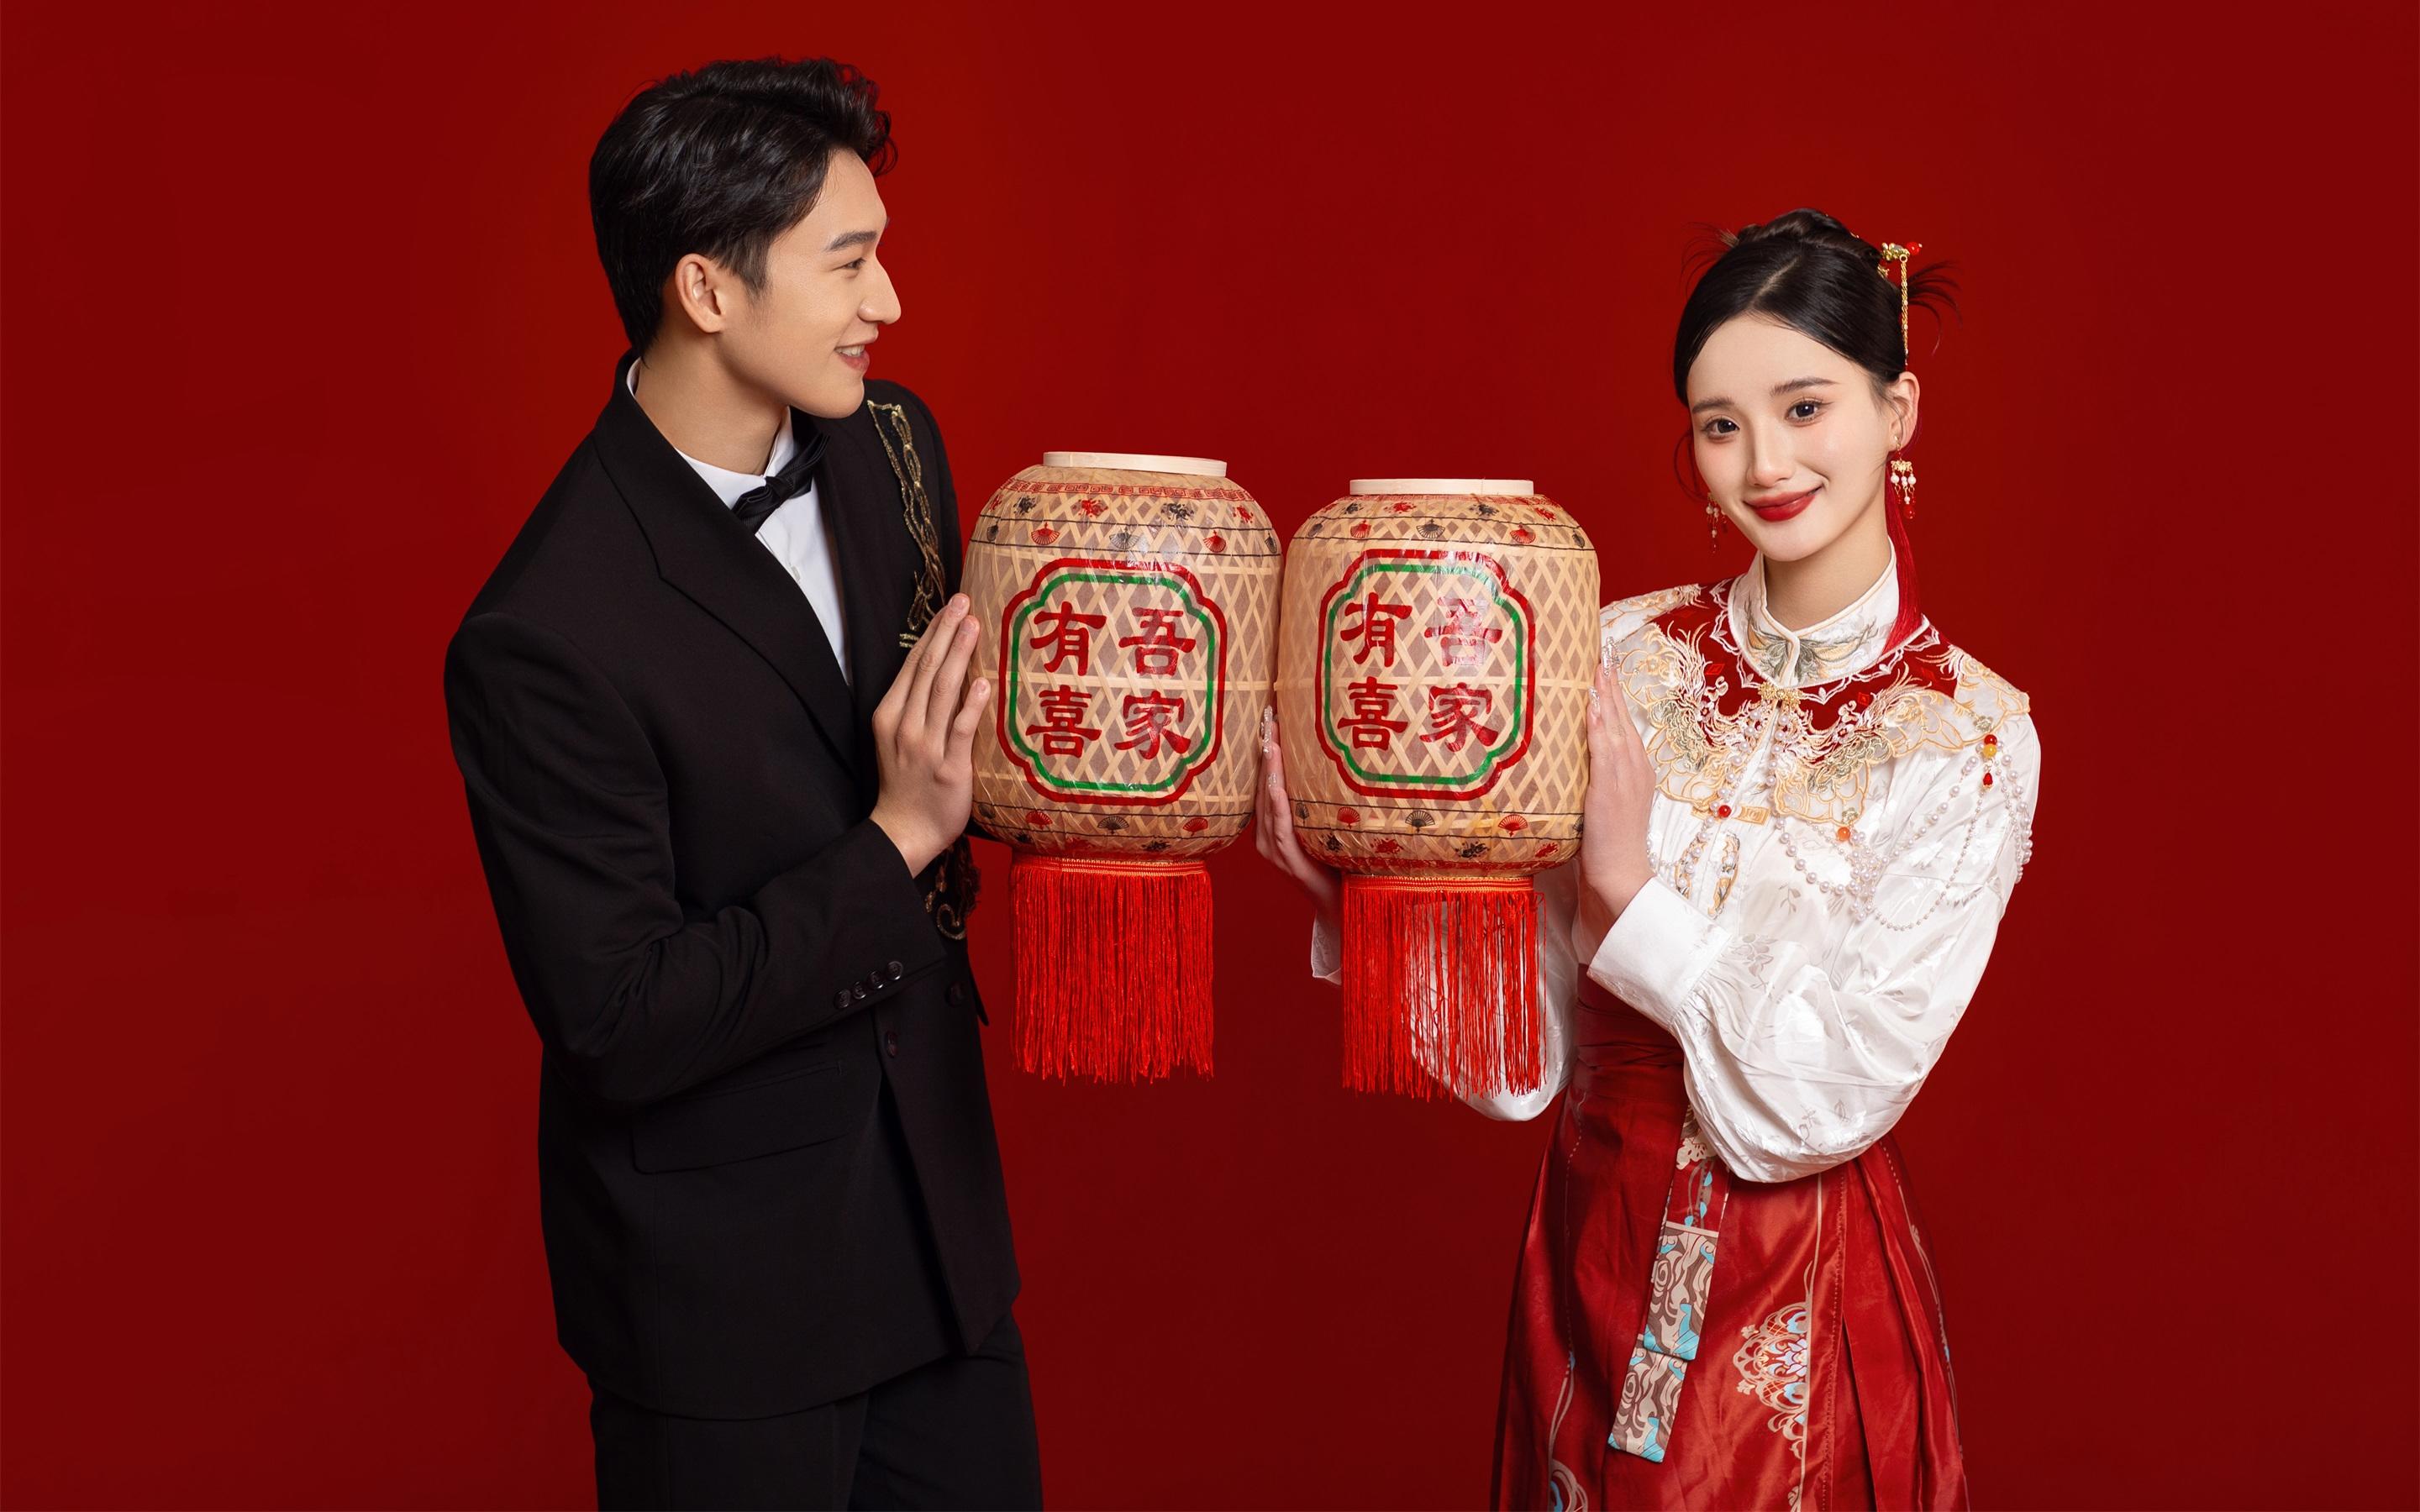  不一样的甜蜜新中式喜嫁婚纱照❤